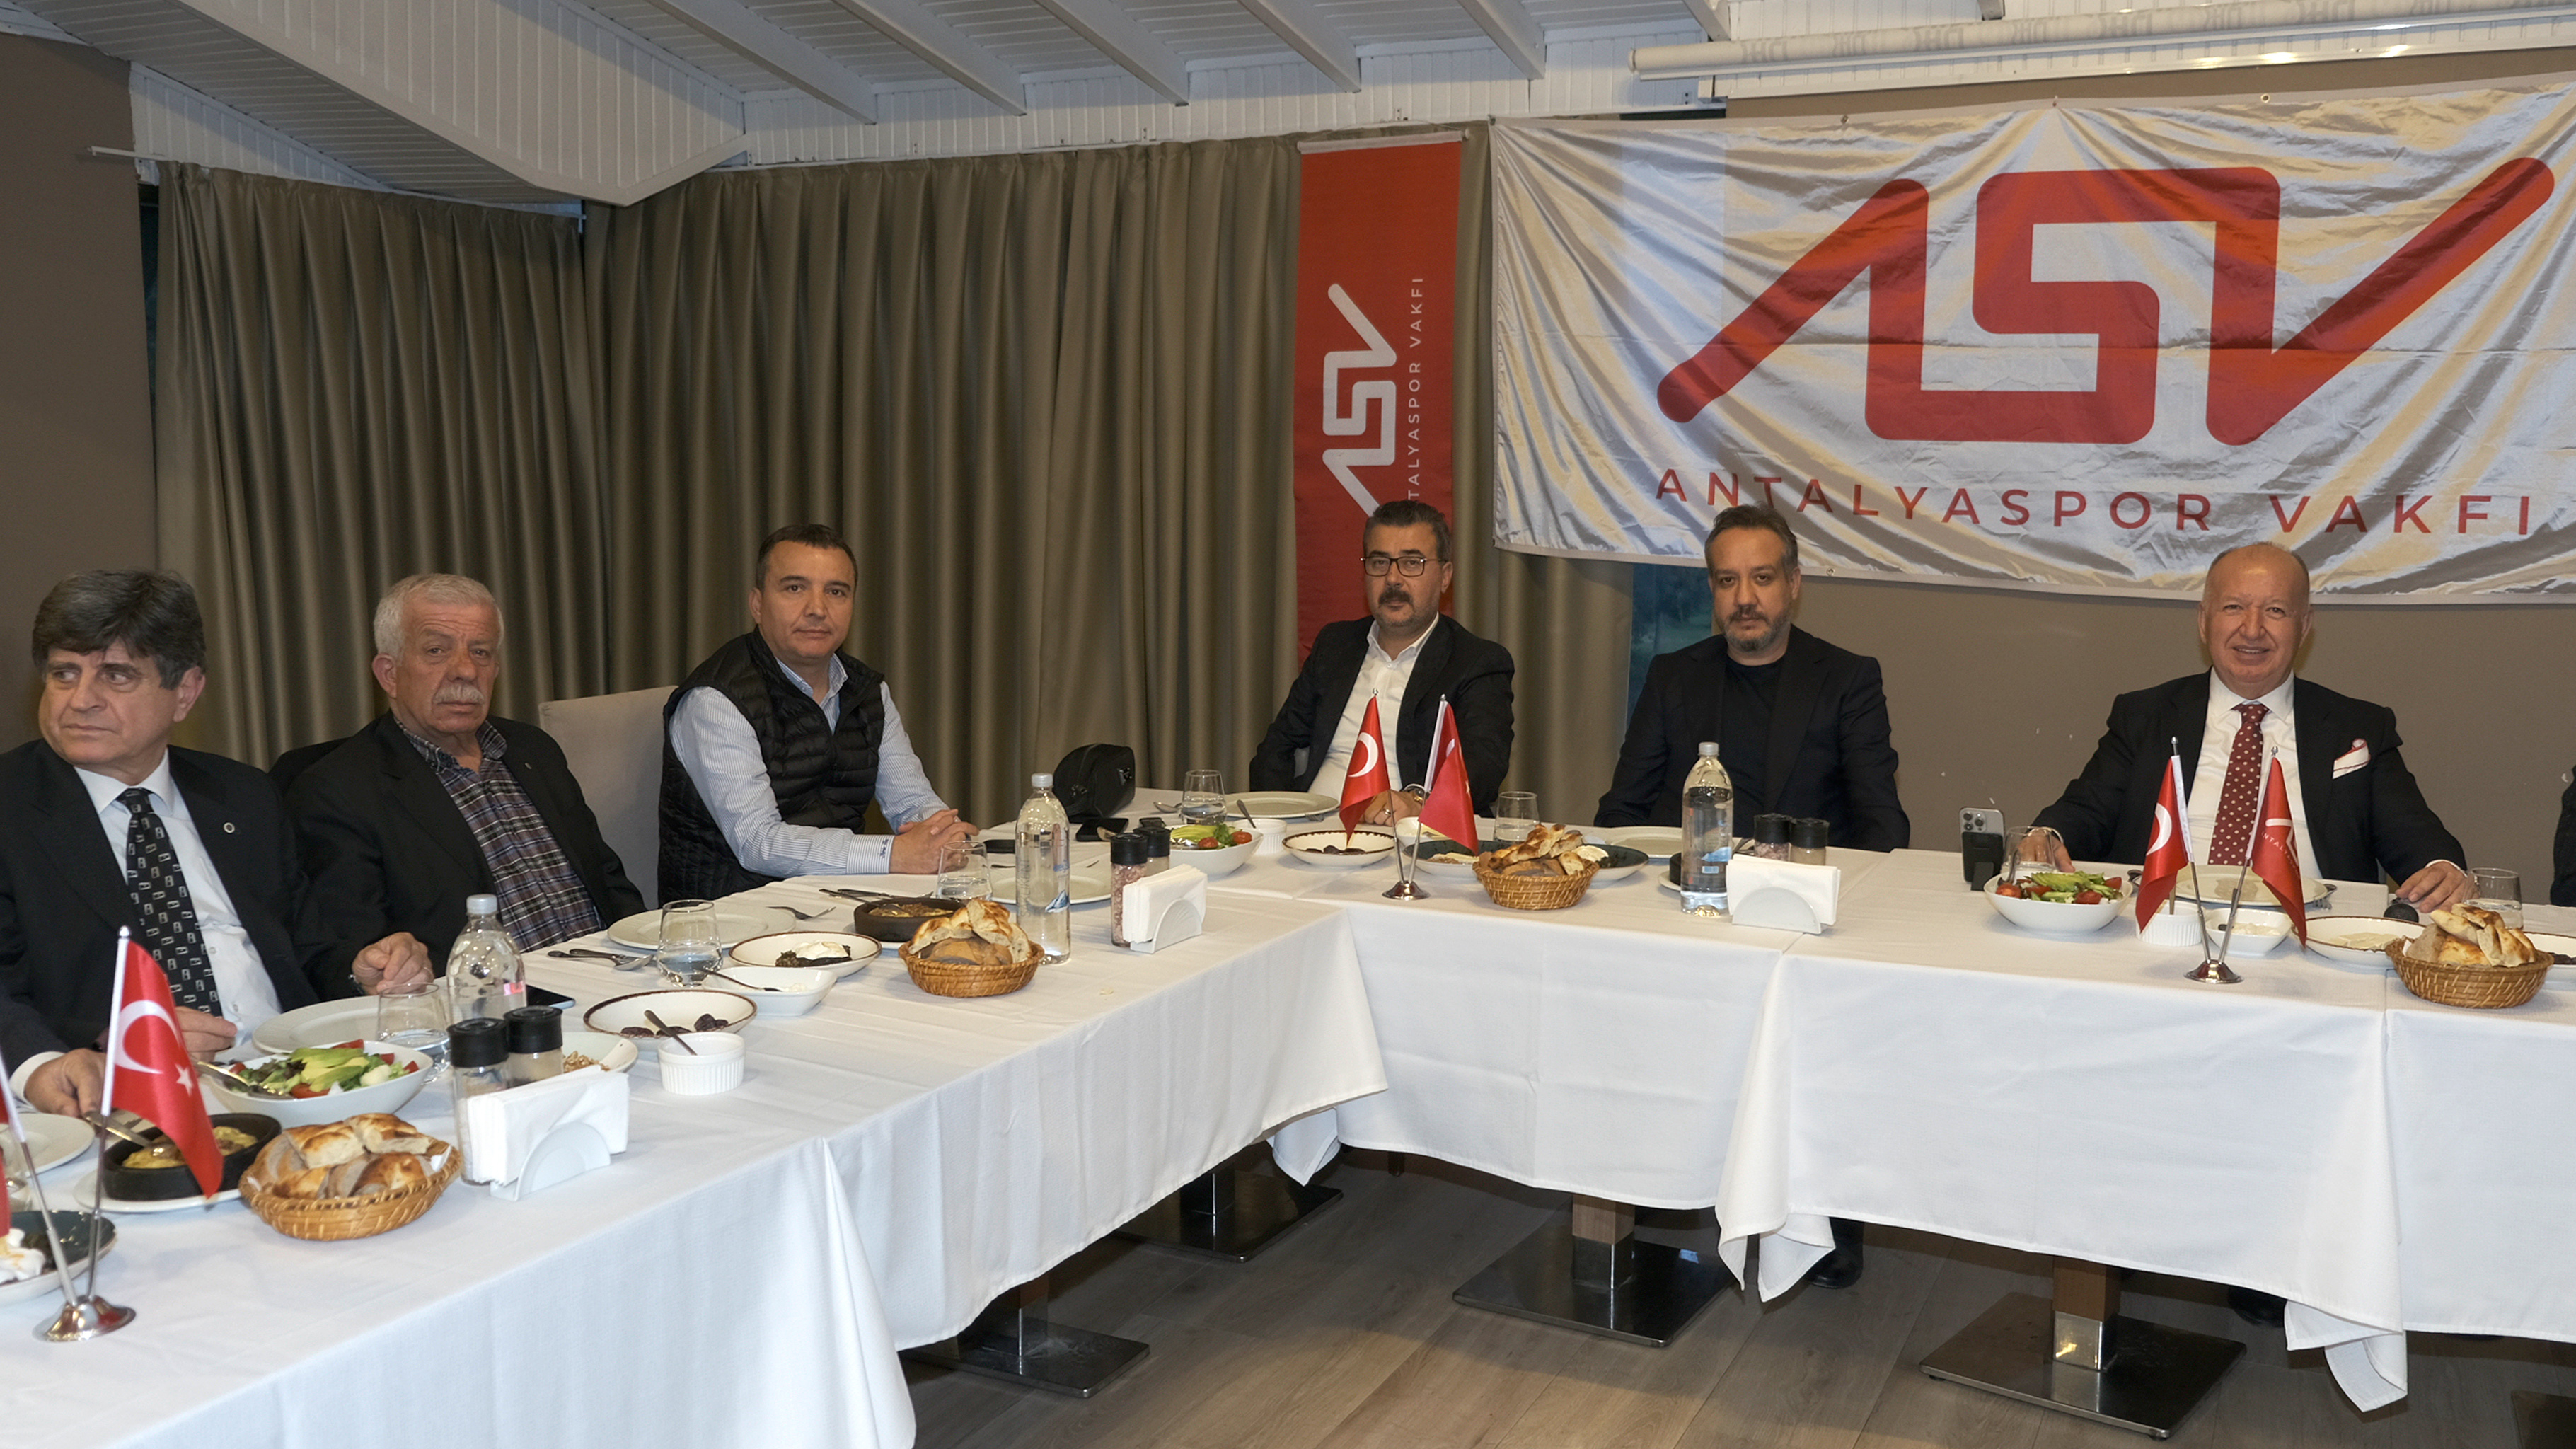 Antalyaspor Vakfı İftar Yemeği (4)